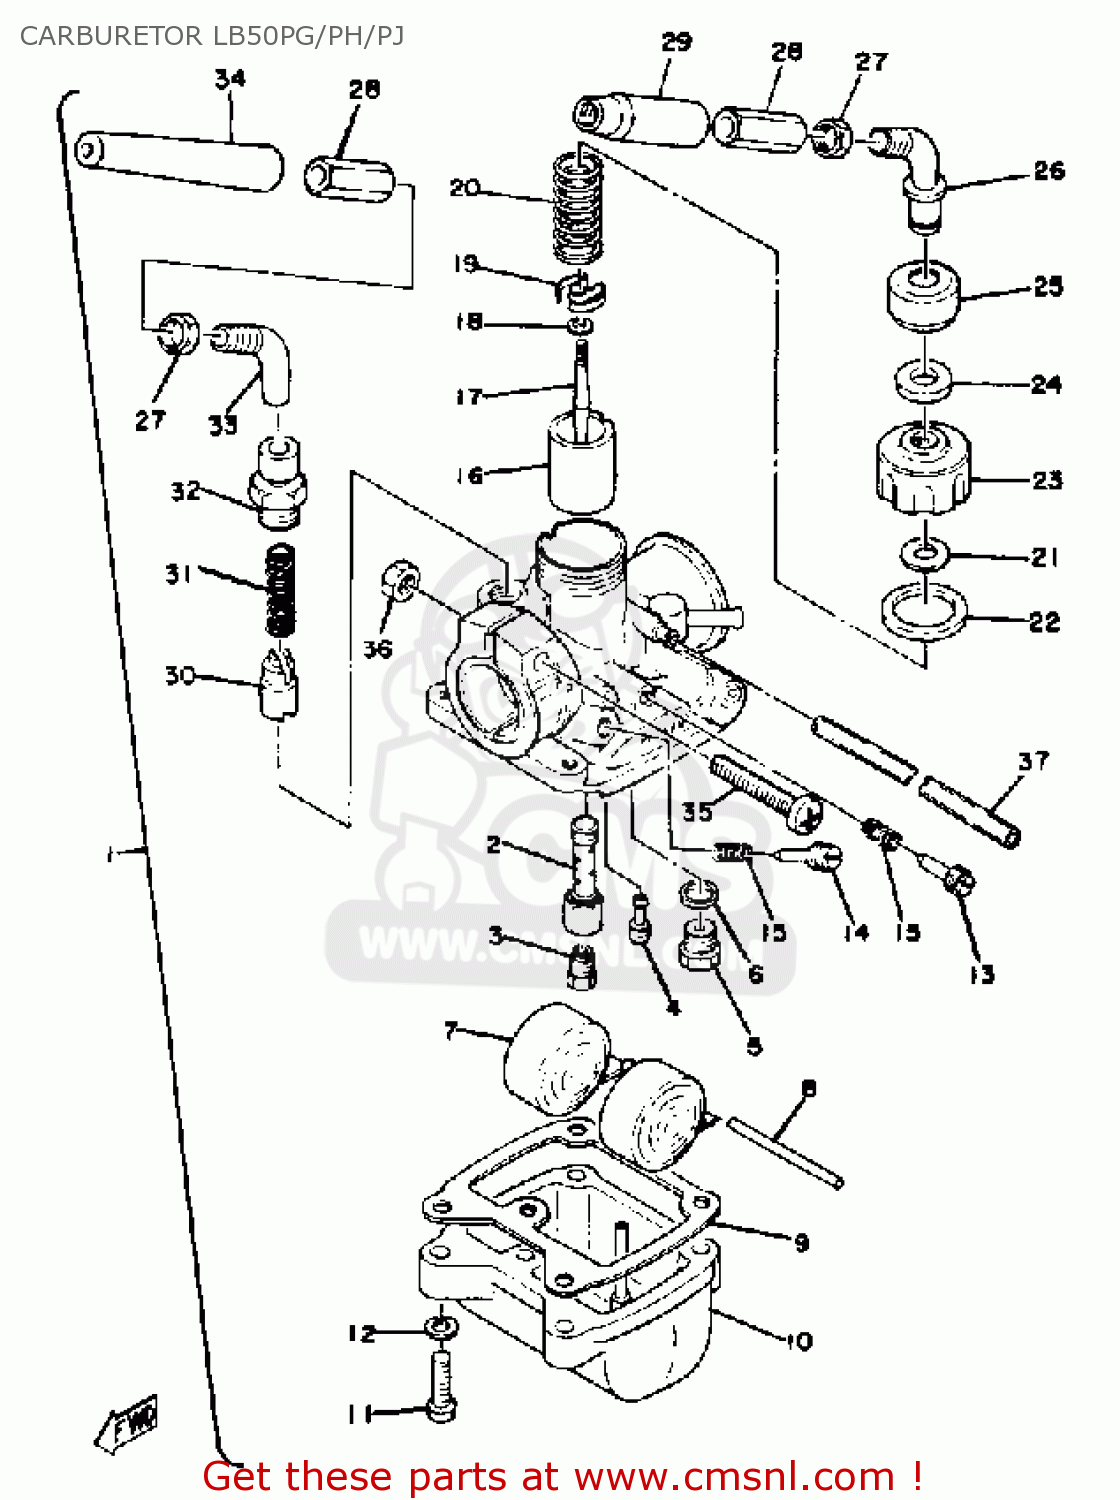 Yamaha LB50PG CHAPPY 1980-1982 CARBURETOR LB50PG/PH/PJ ... polaris 50 wiring diagram 